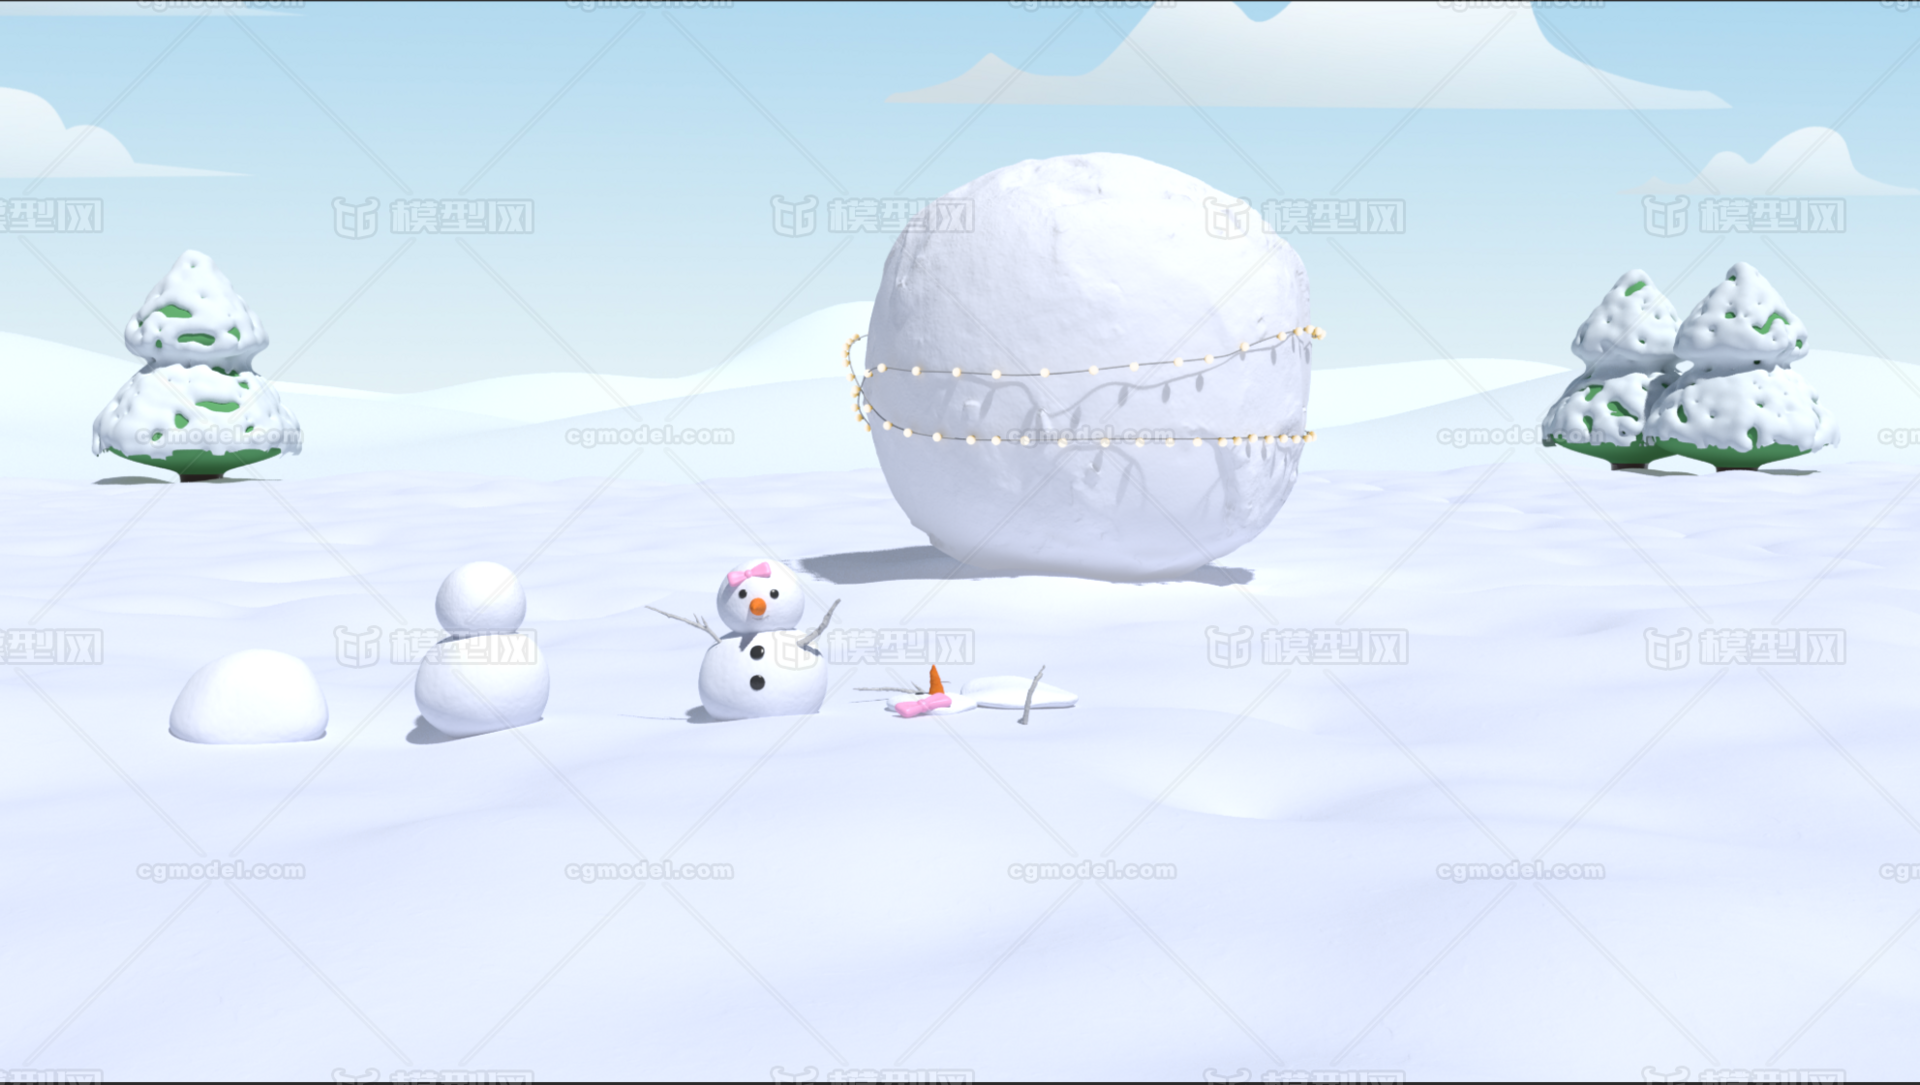 卡通雪景redsfhit材质,雪人,胡萝卜,雪球,写实雪